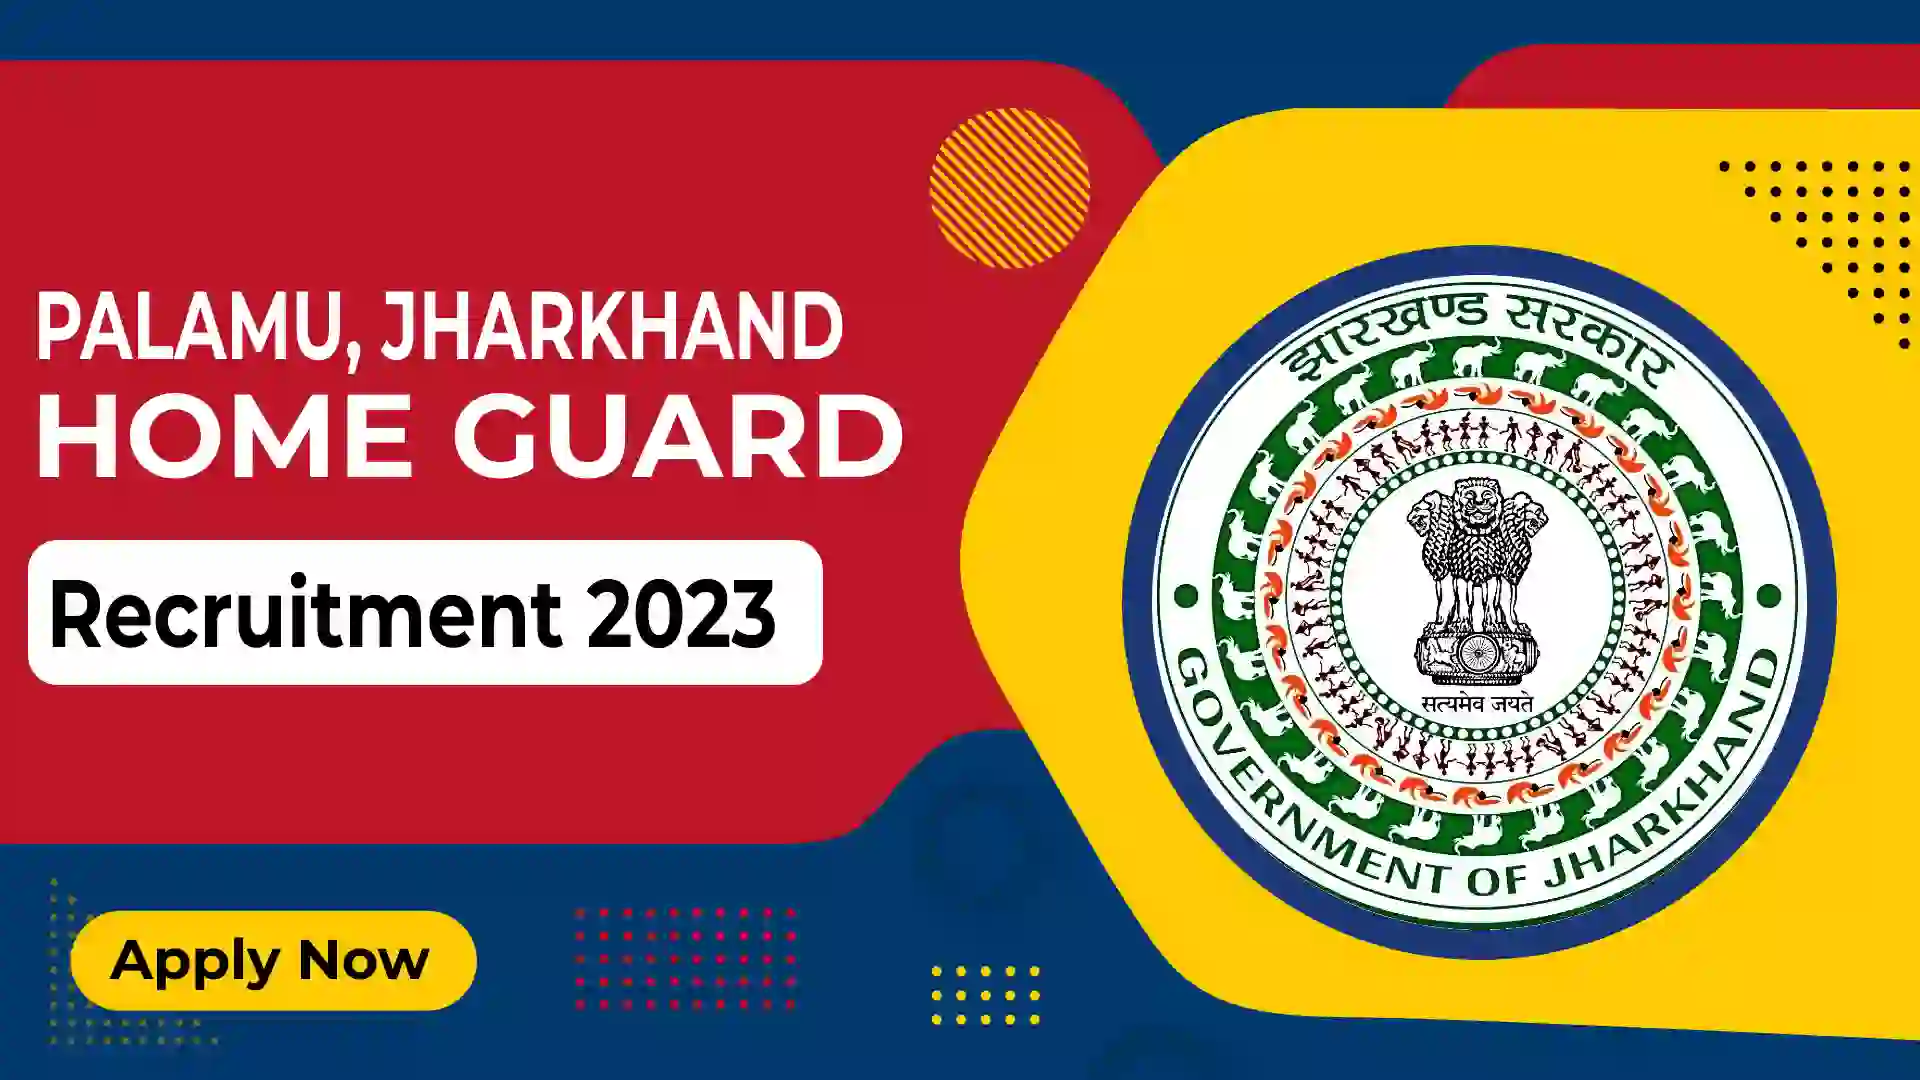 Palamu, Jharkhand Home Guard Recruitment 2023